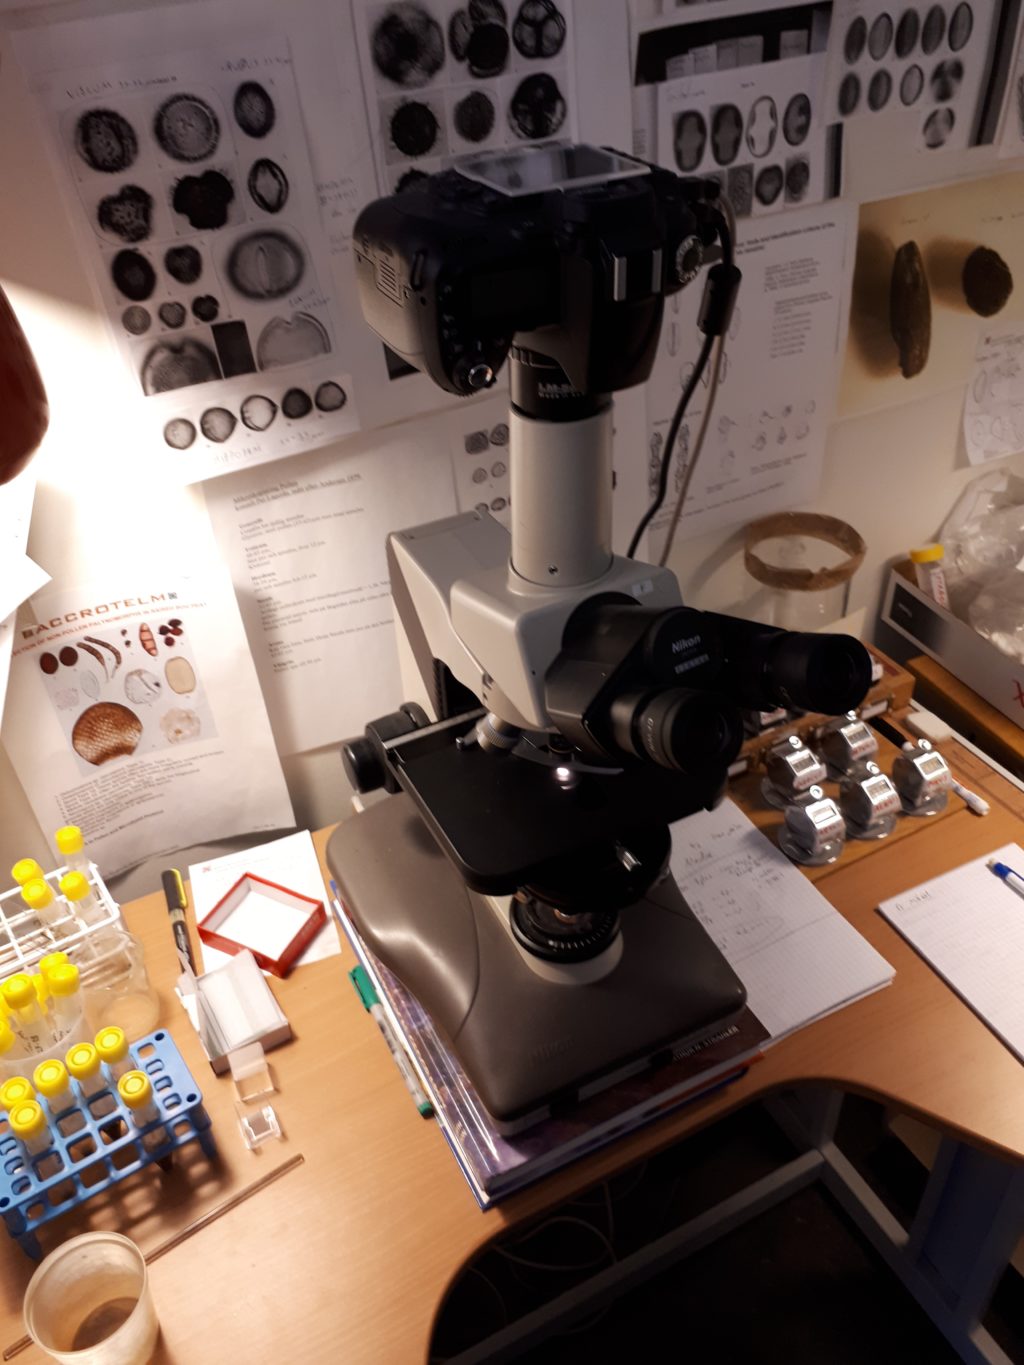 I mikroskopet kan man se små saker som parasitägg, pollen, hårstrå med mera. Vid en parasitanalys använder man vanligen 100 och 400 gångers förstoring. Foto: Jonas Bergman.